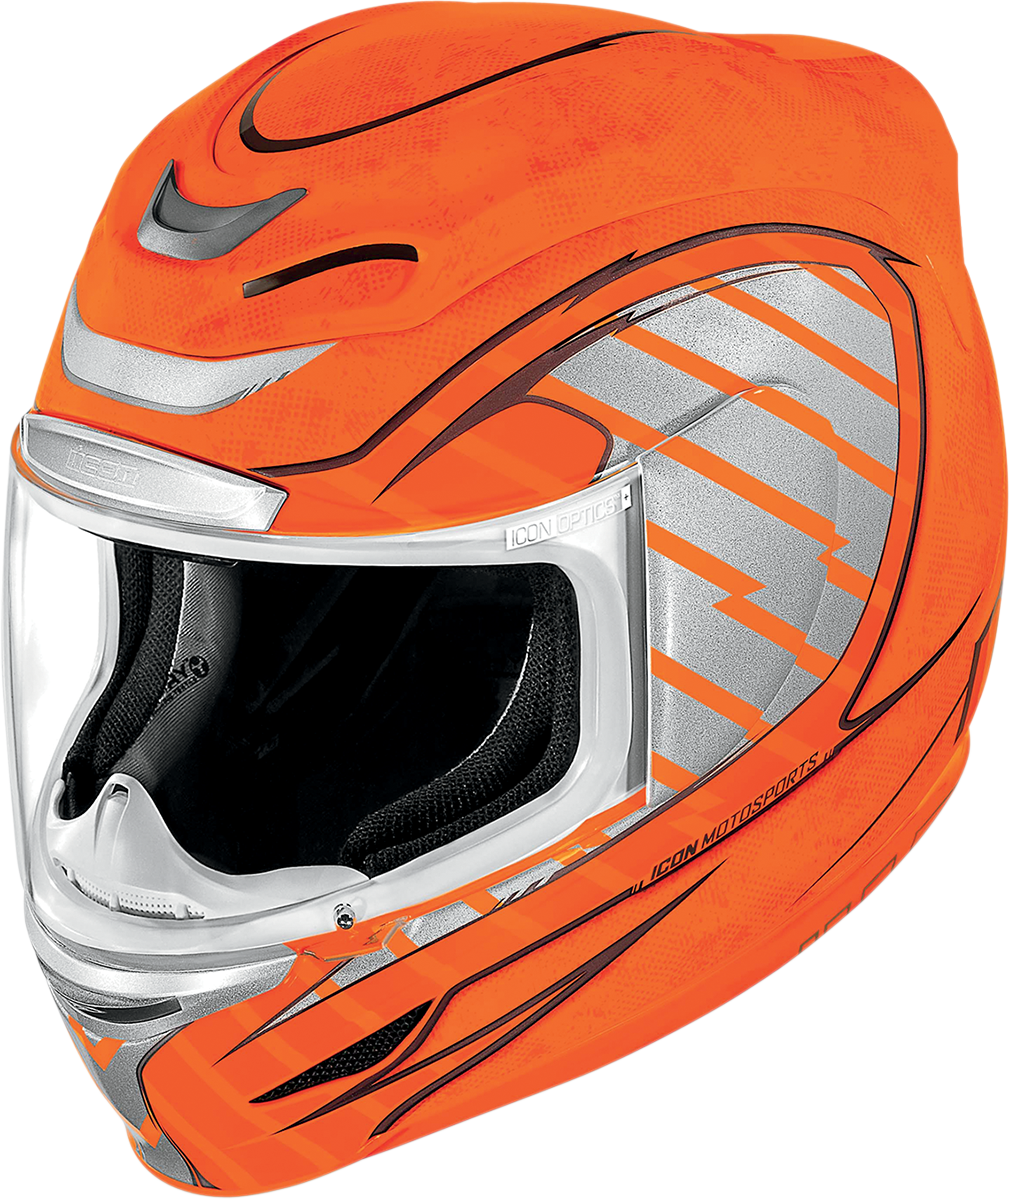 Orange Motorcycle Helmet Side View PNG